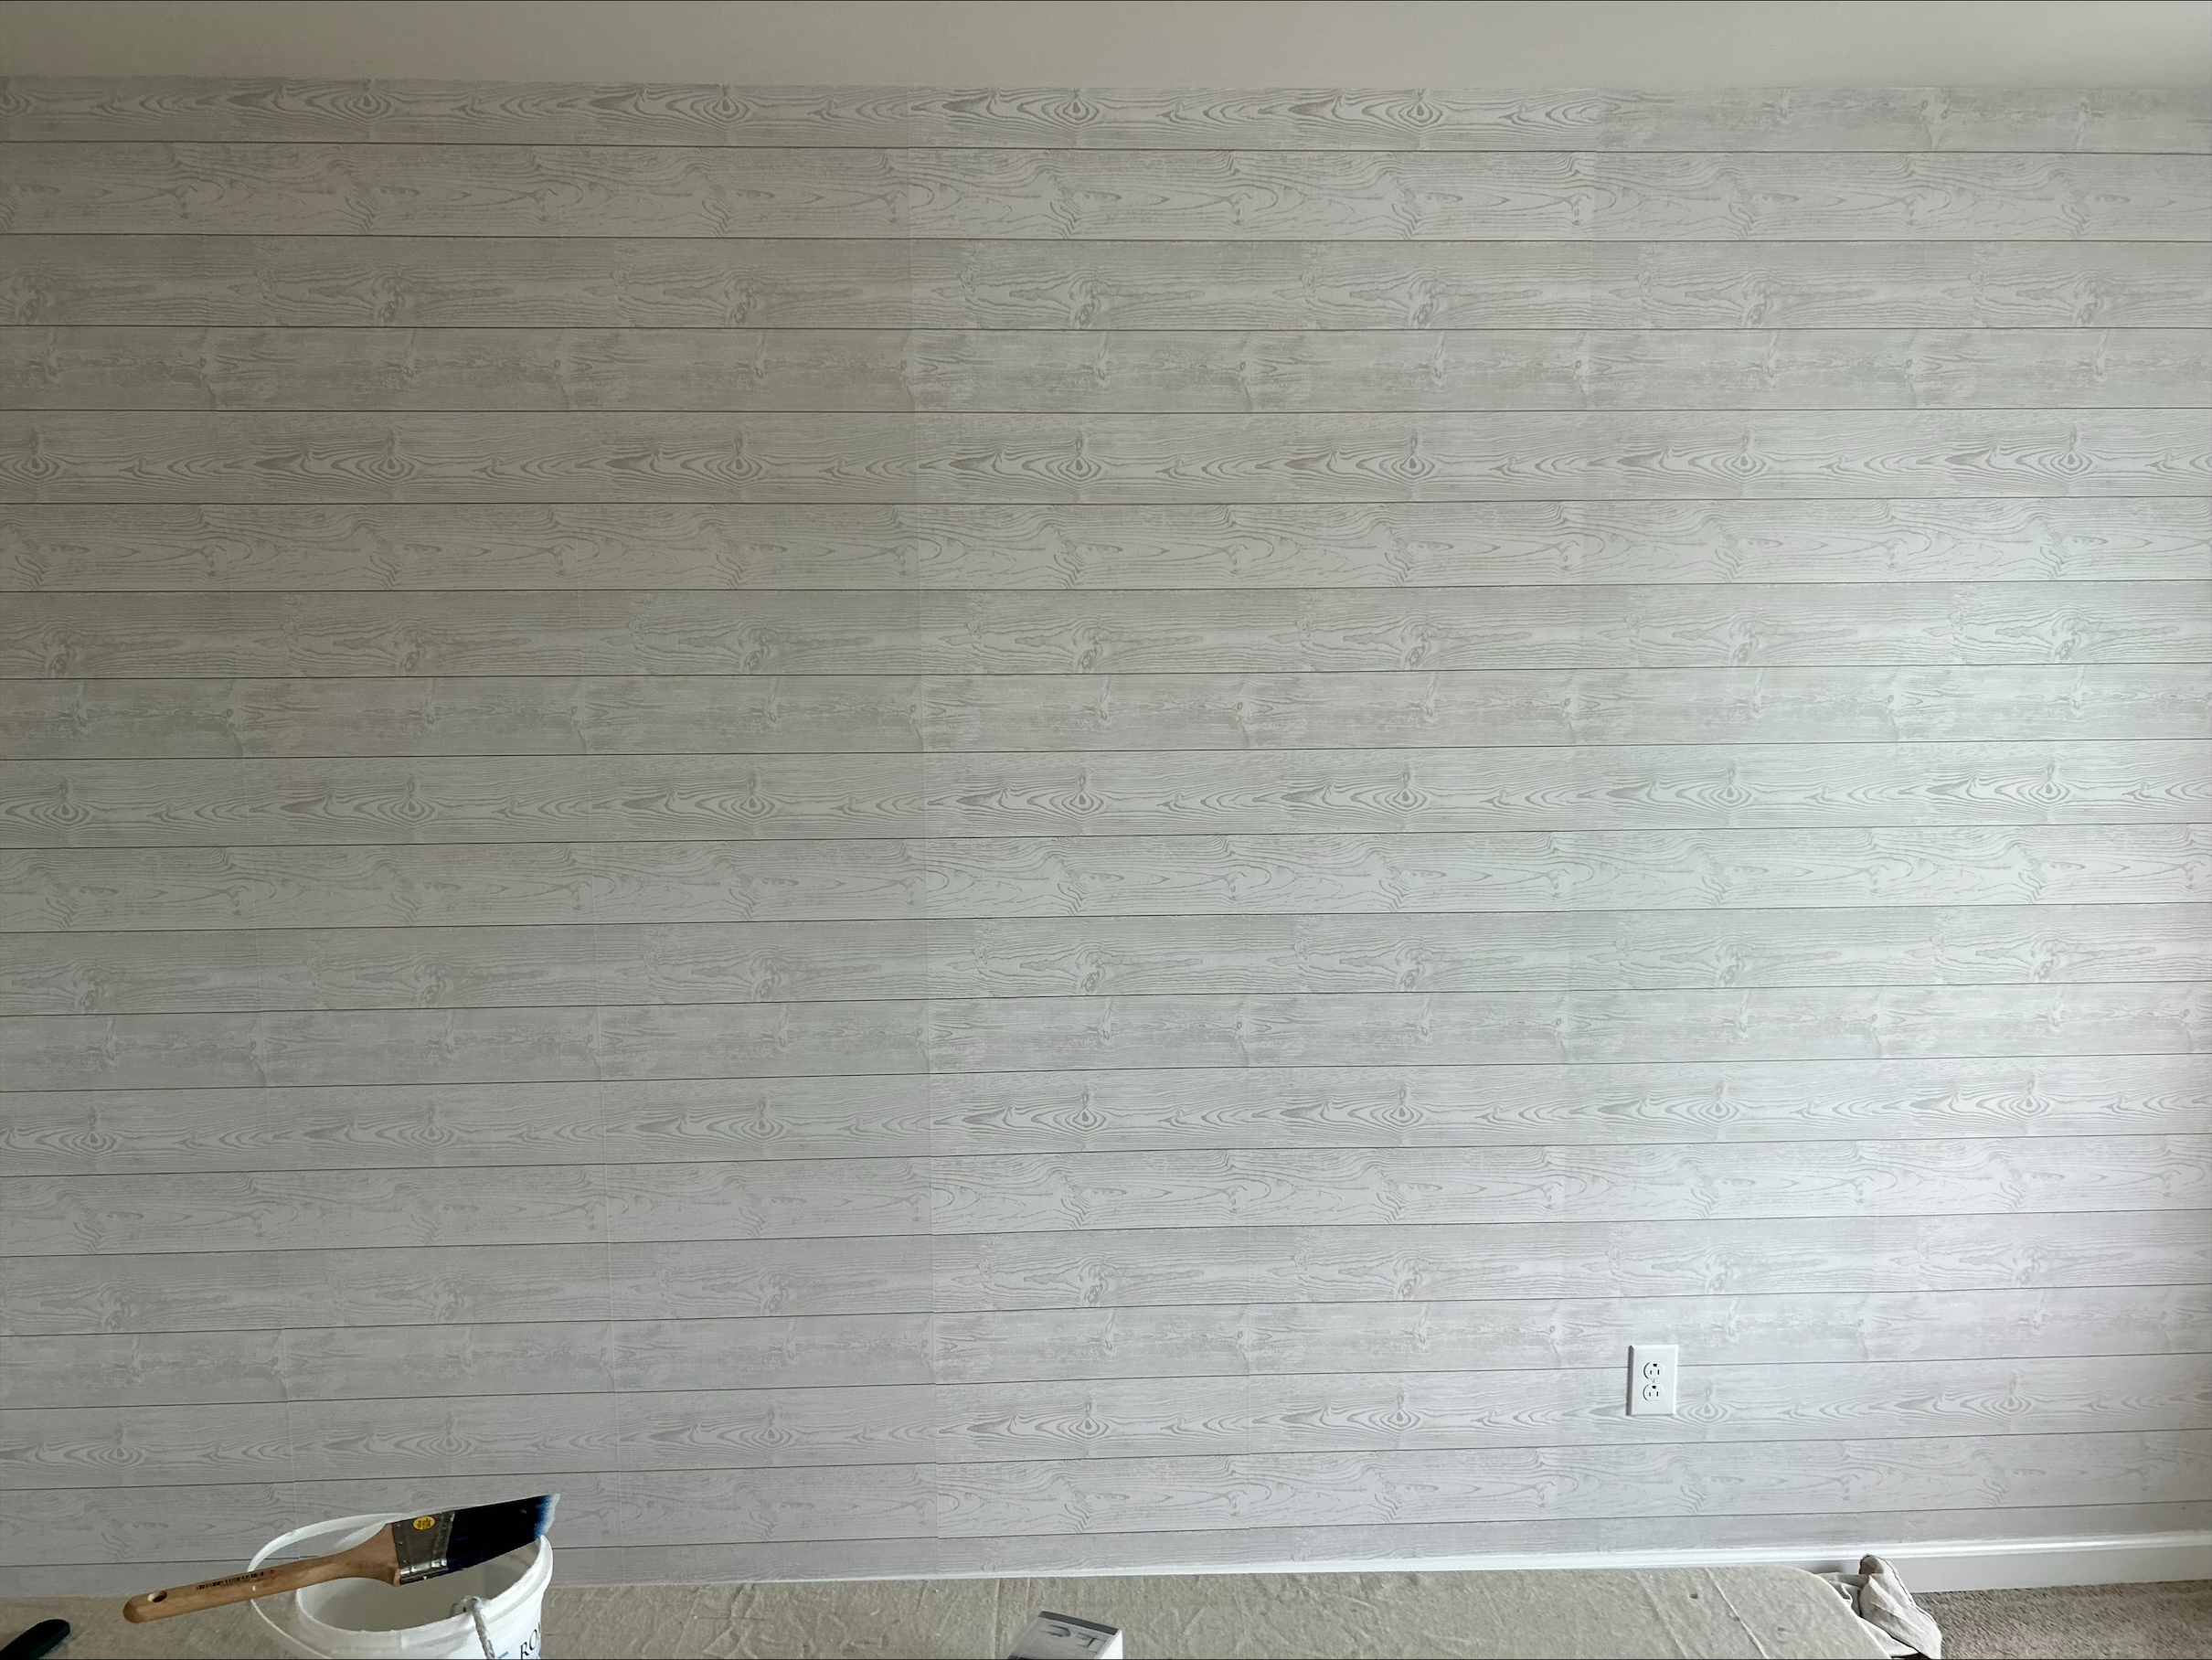 Wallpaper Installation – Jackson, NJ After